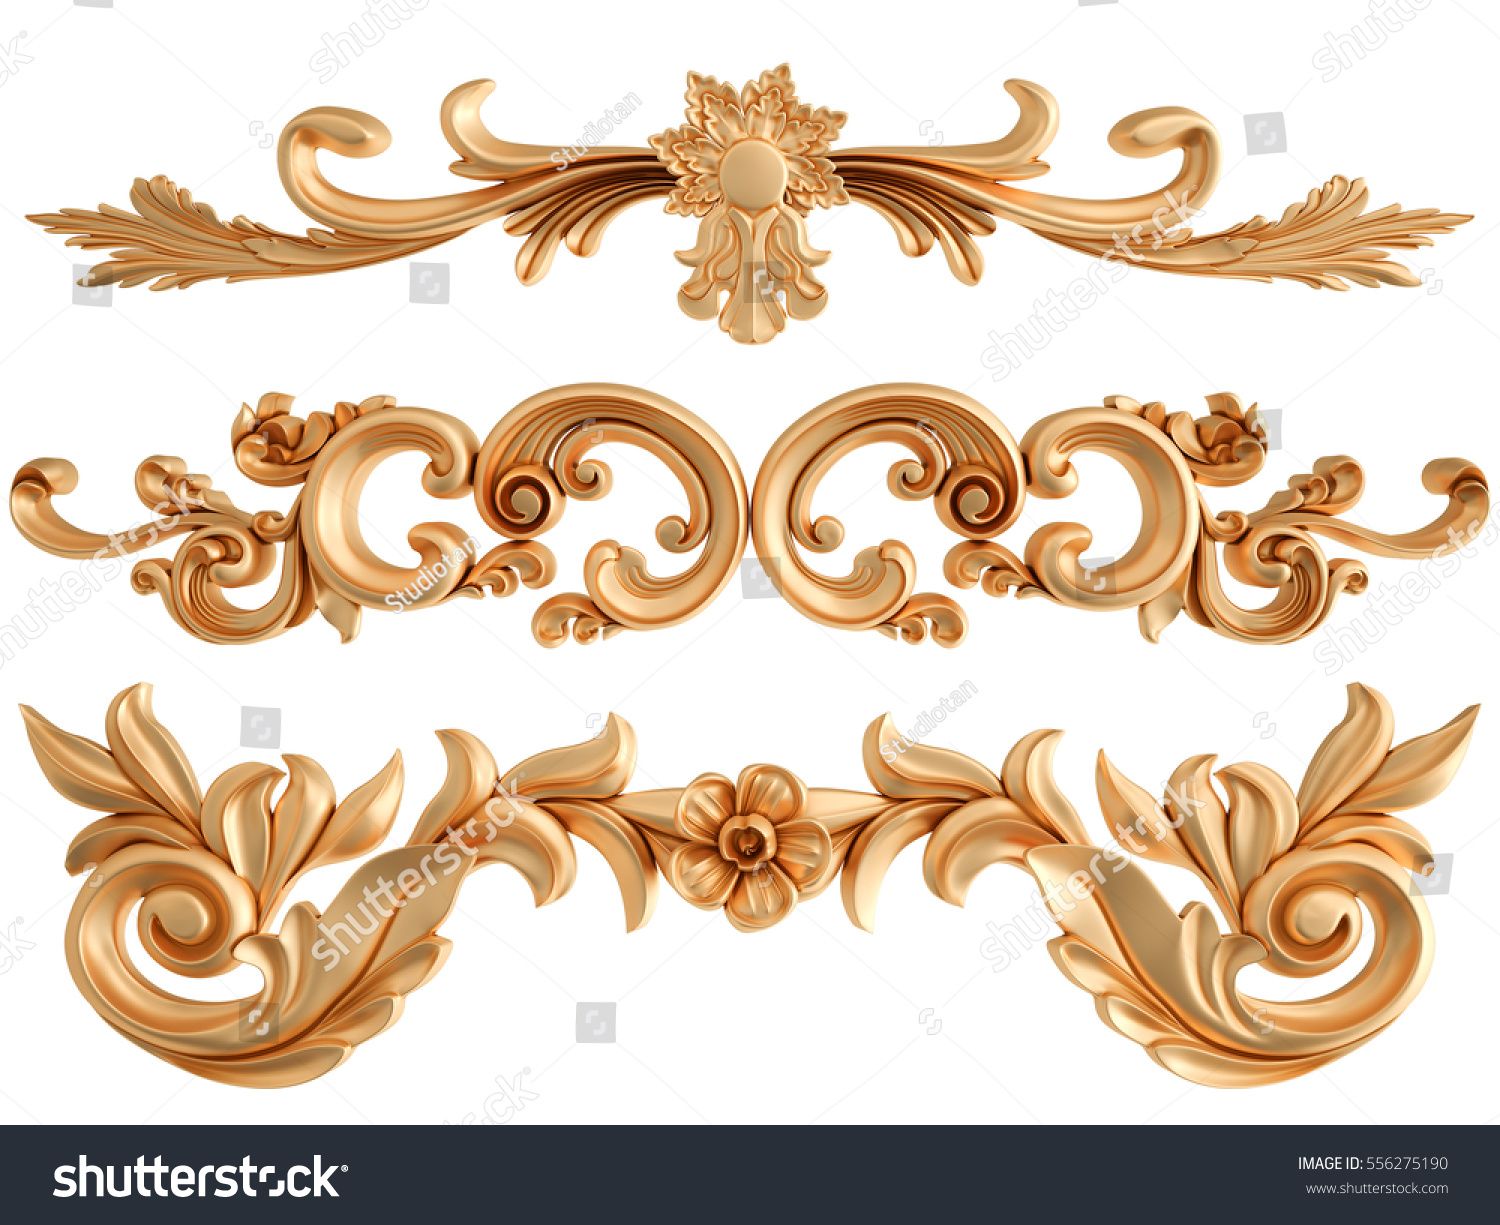 Gold Ornament On White Background Isolated Stock Illustration 556275190 _ Shutterstock.jpg